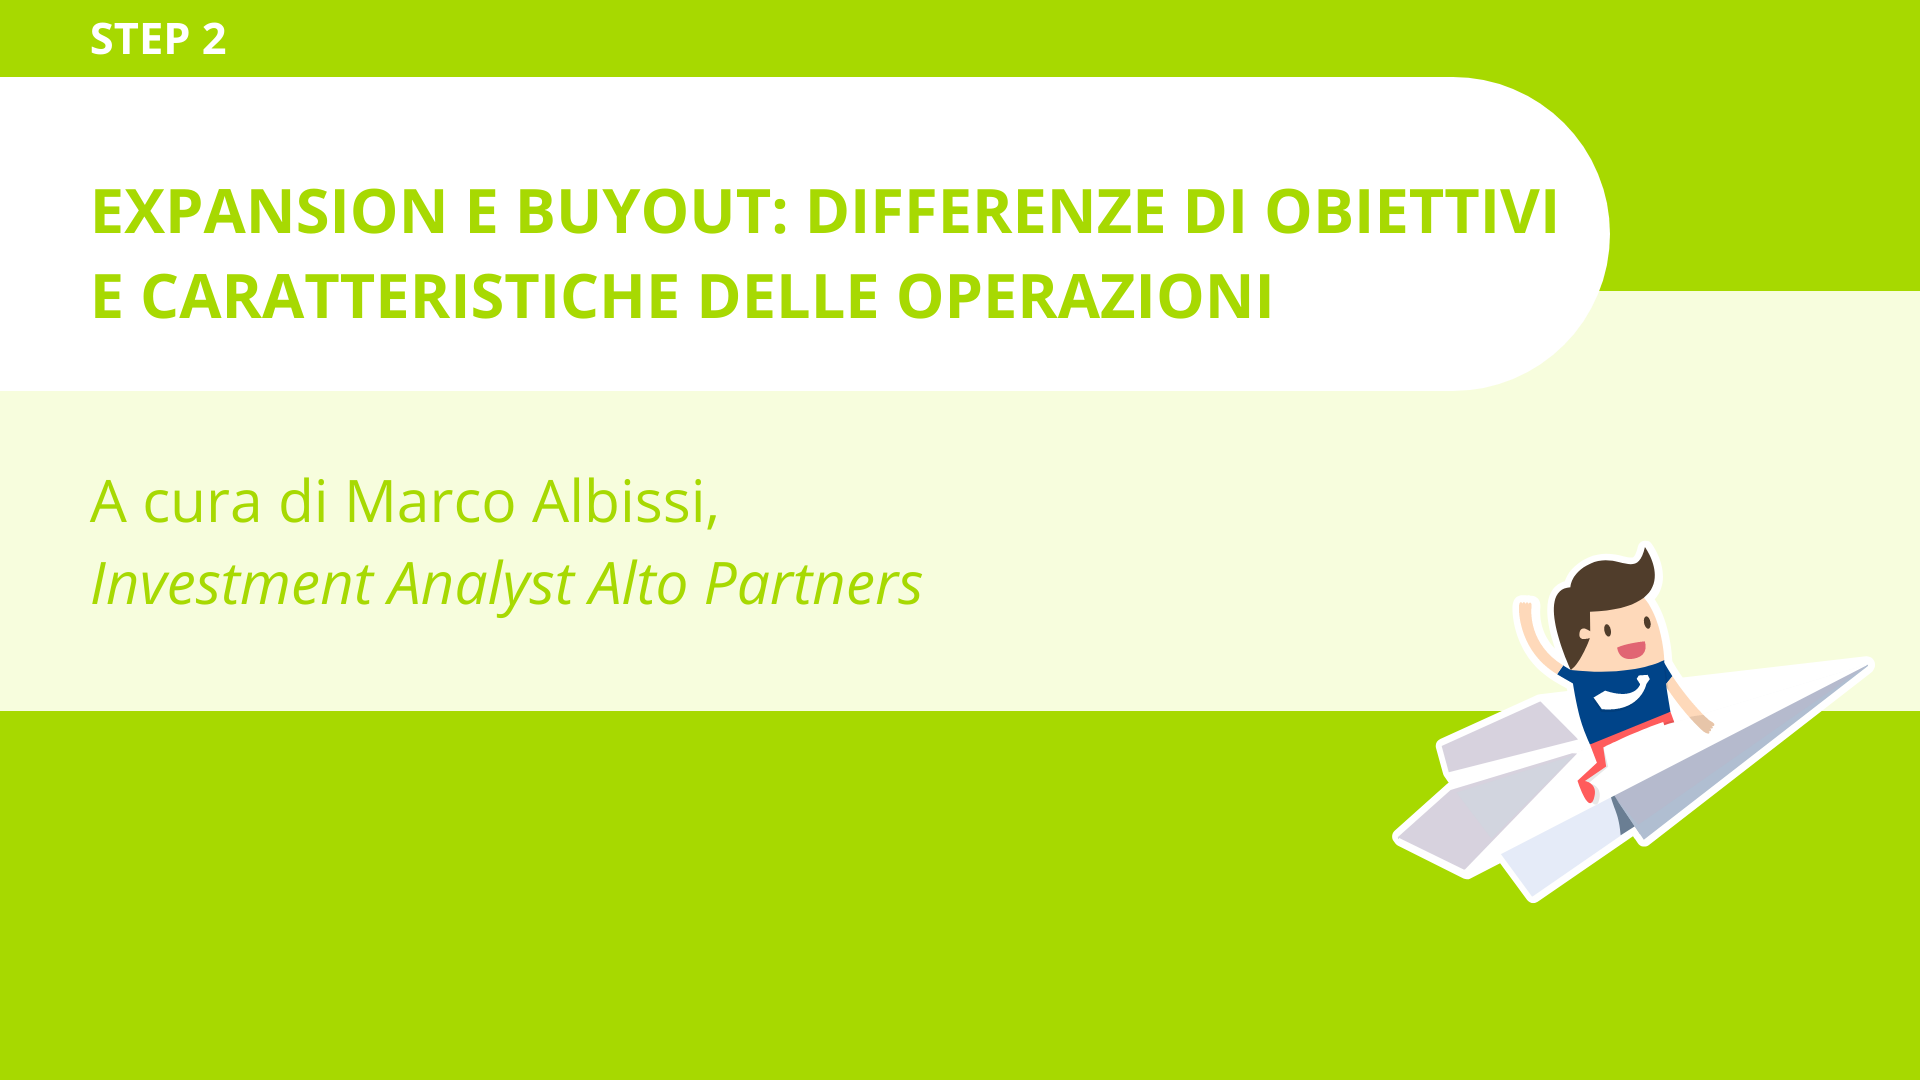 Expansion e buyout: differenze di obiettivi e caratteristiche delle operazioni<br>Marco Albissi - Alto Partners 